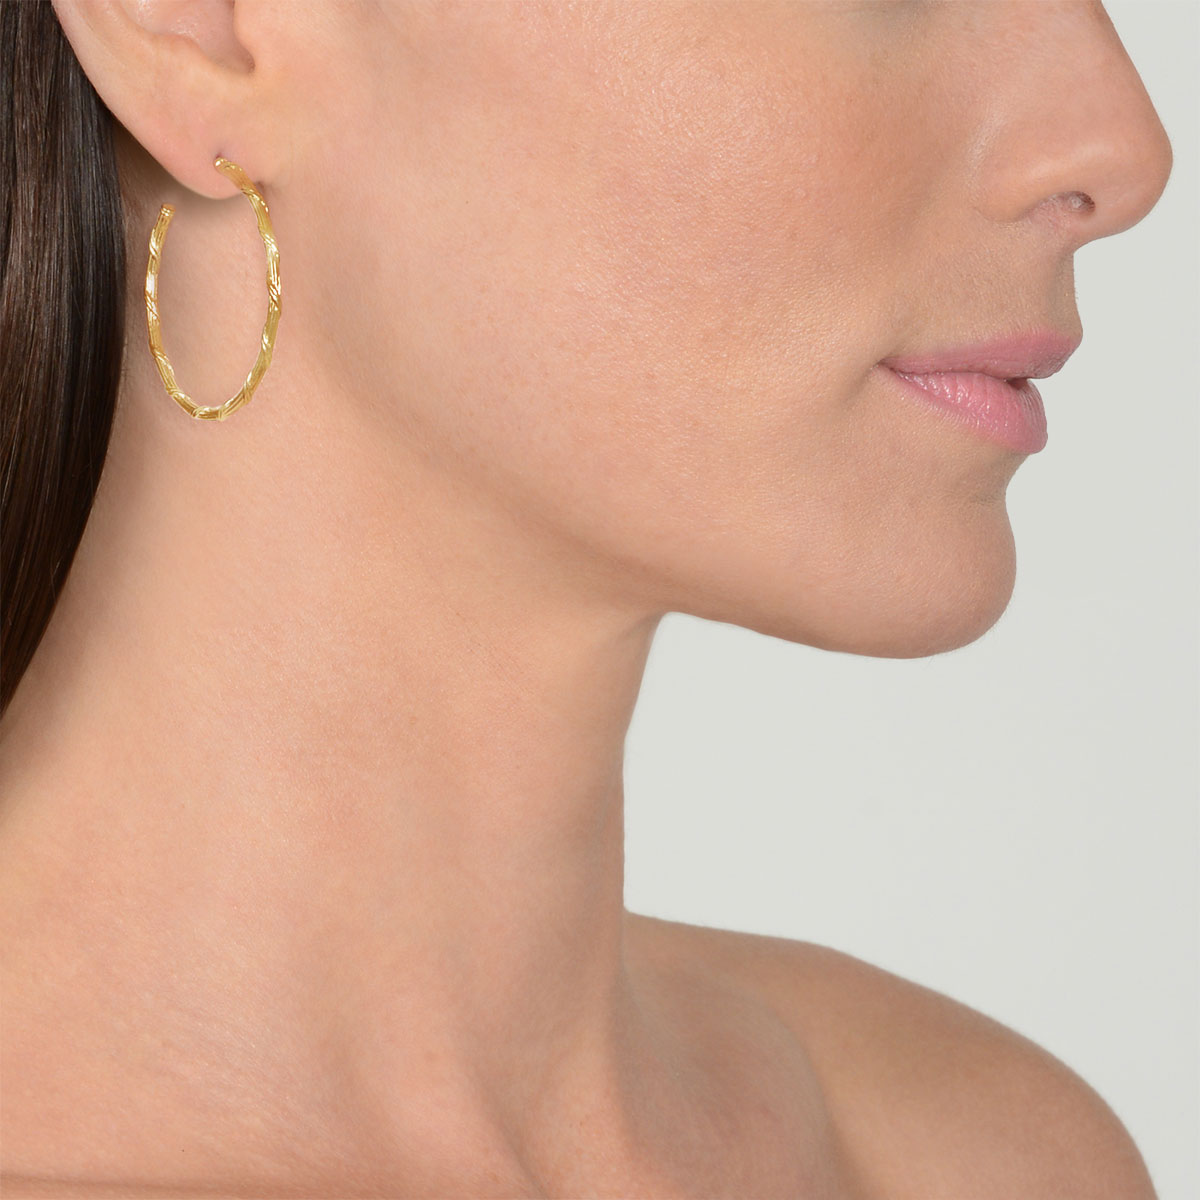 Heritage Hoop Earrings in 18K yellow gold 1.5"